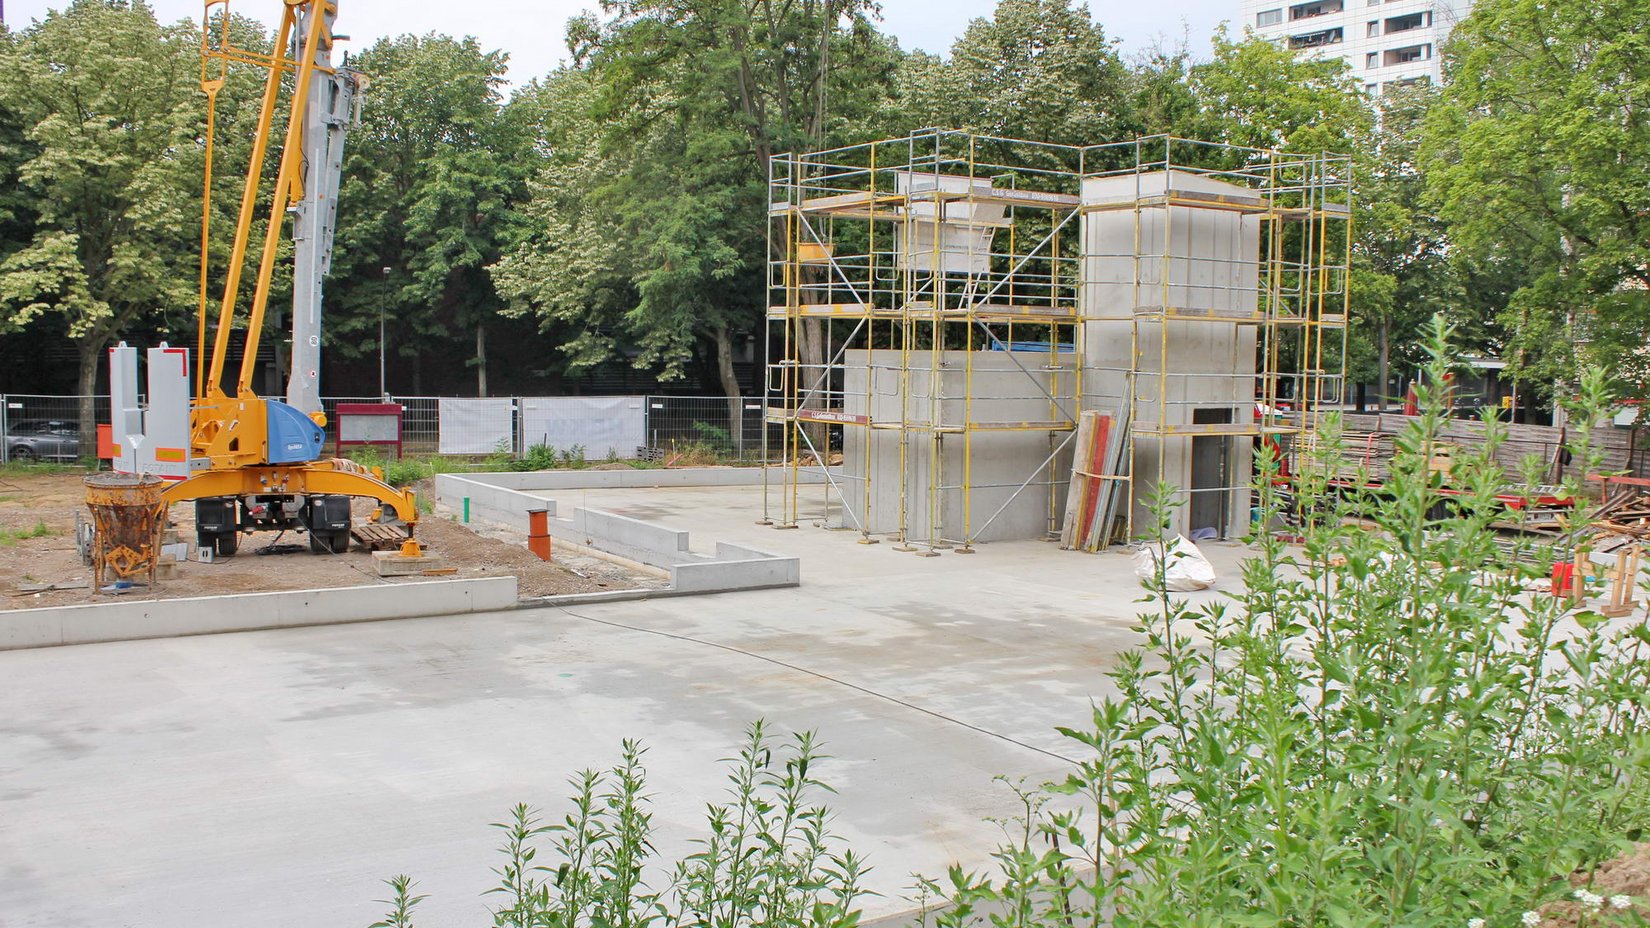 Baustelle Neubau Gemeindezentrum: Plattenfundament mit Aufzugsschacht aus Stahlbeton